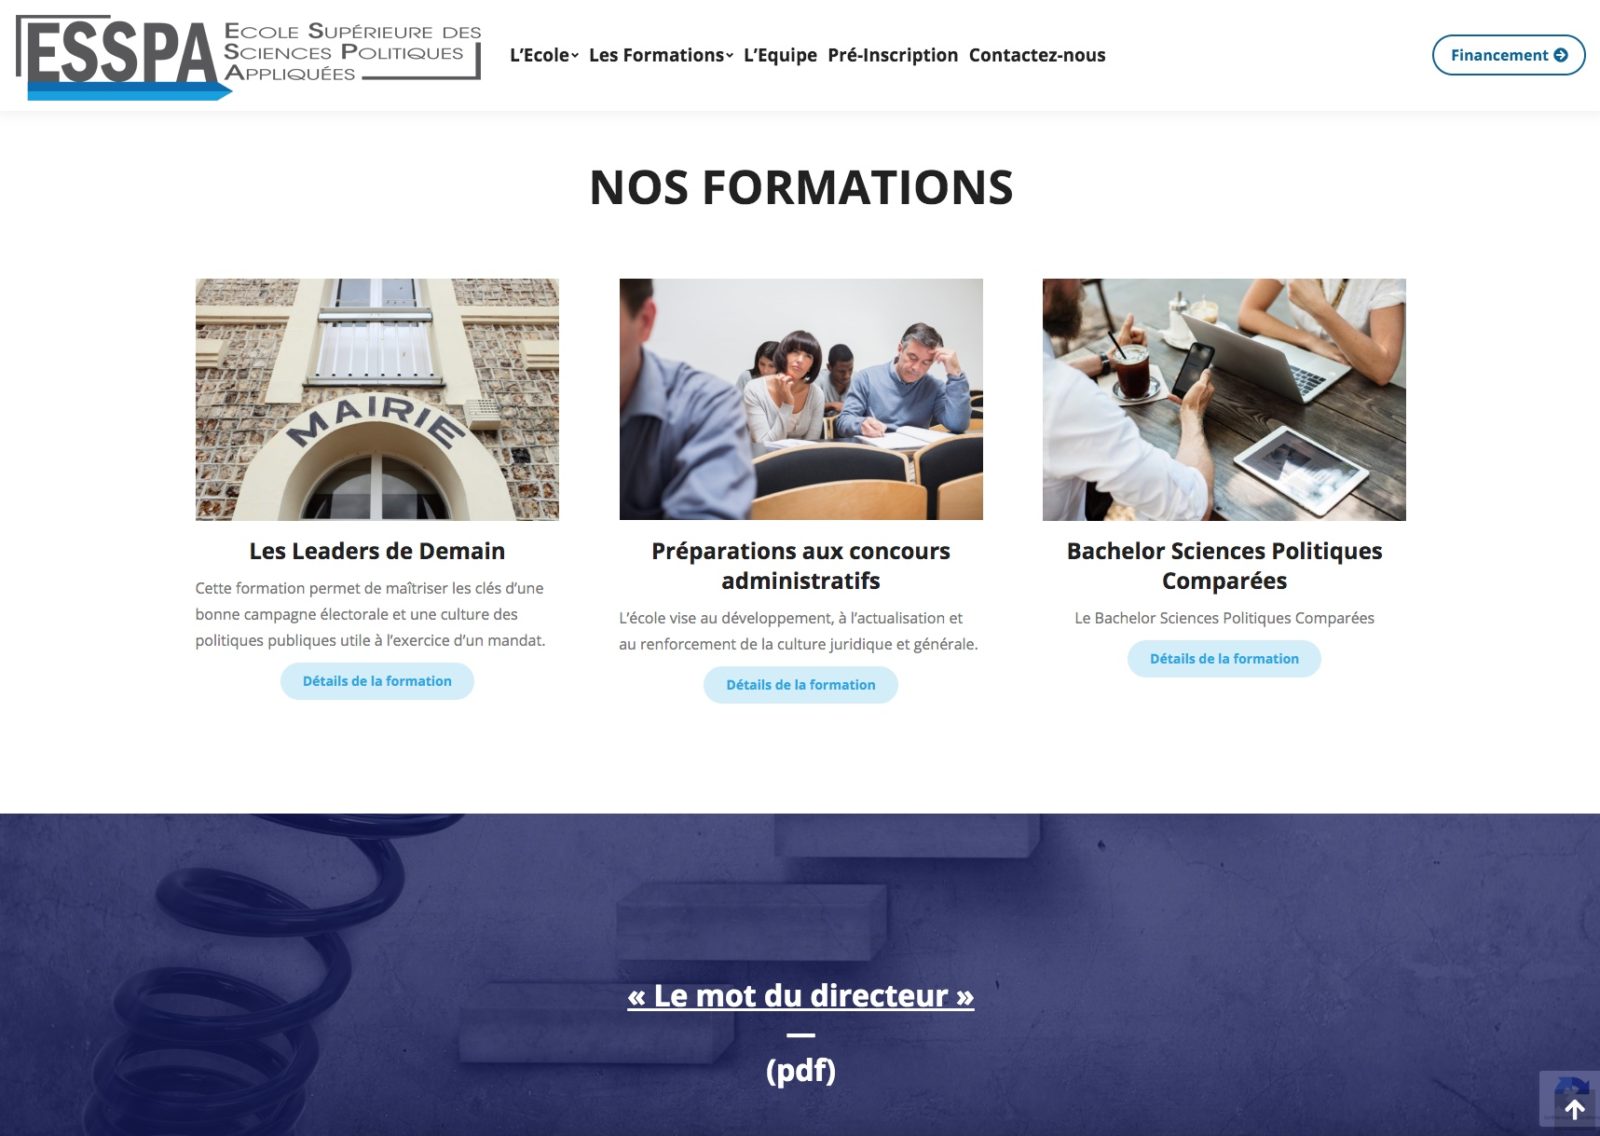 ESSPA nos formations, une école situé sur Mulhouse de l'agence web Karedess.